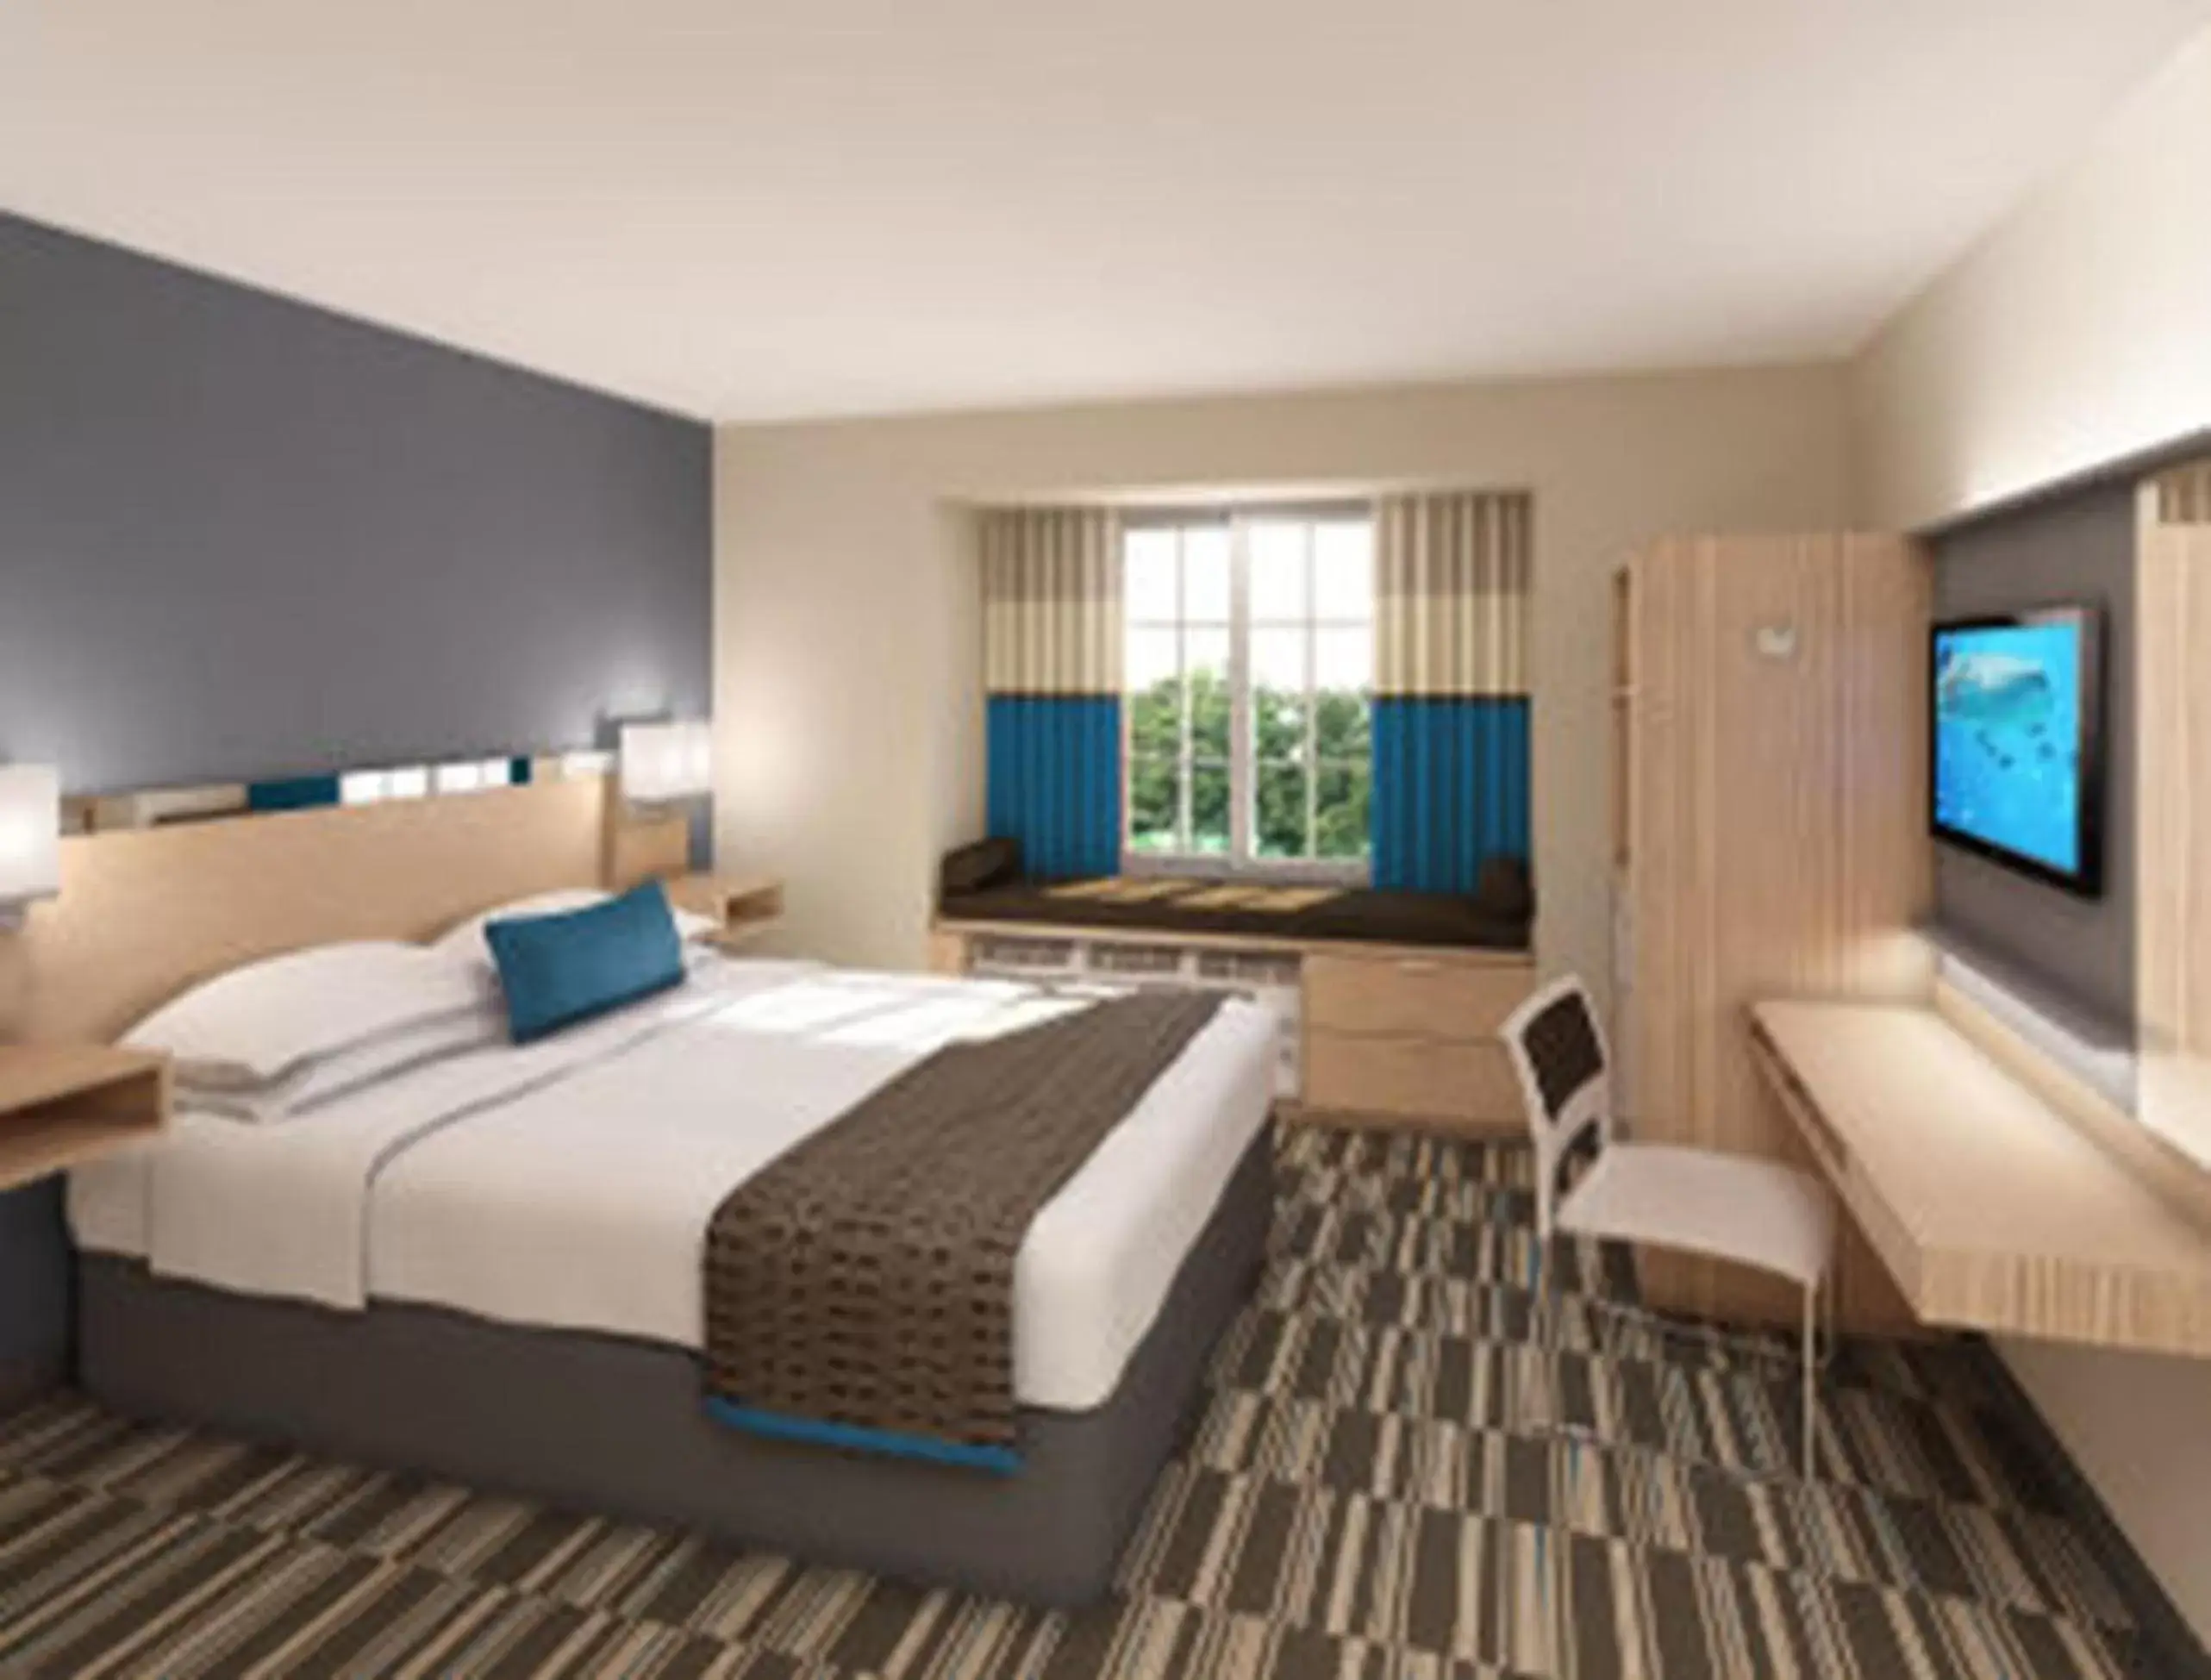 Bedroom in Microtel Inn & Suites by Wyndham Altoona